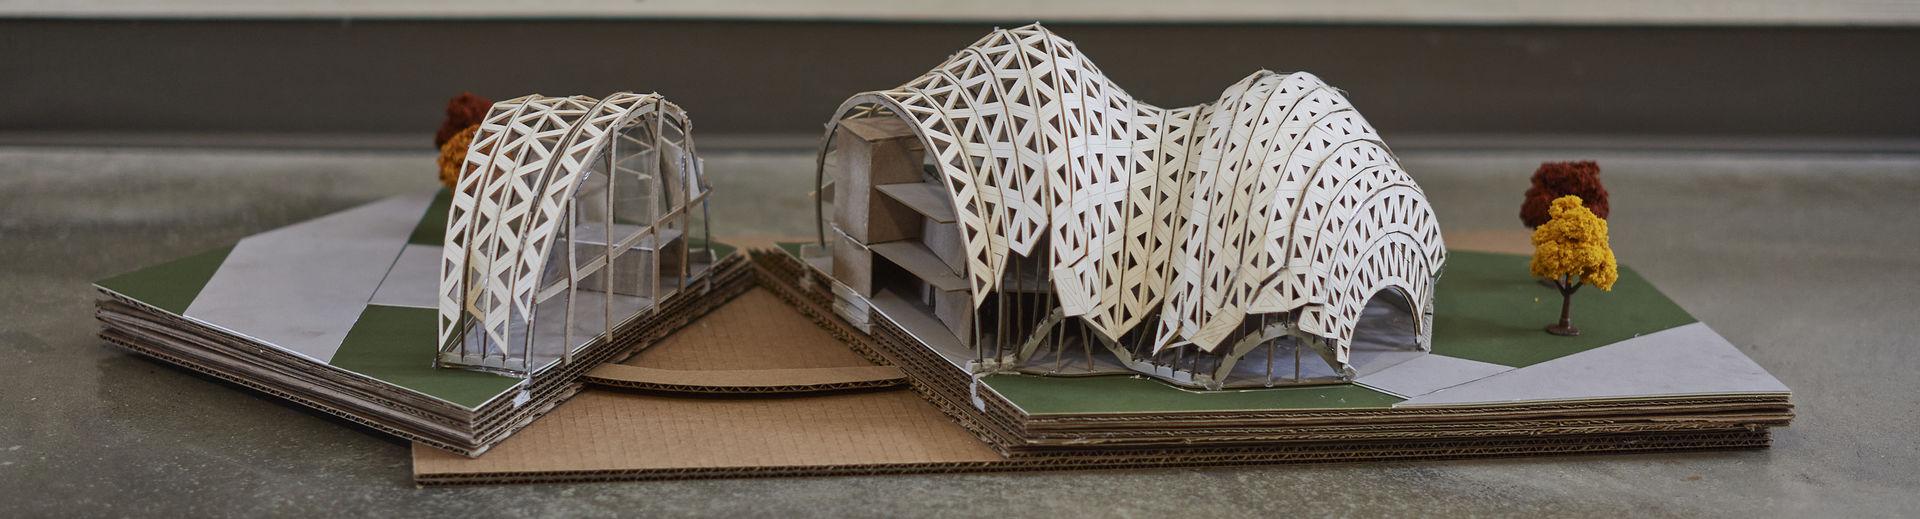 给出了一个曲面屋顶结构的建筑模型.